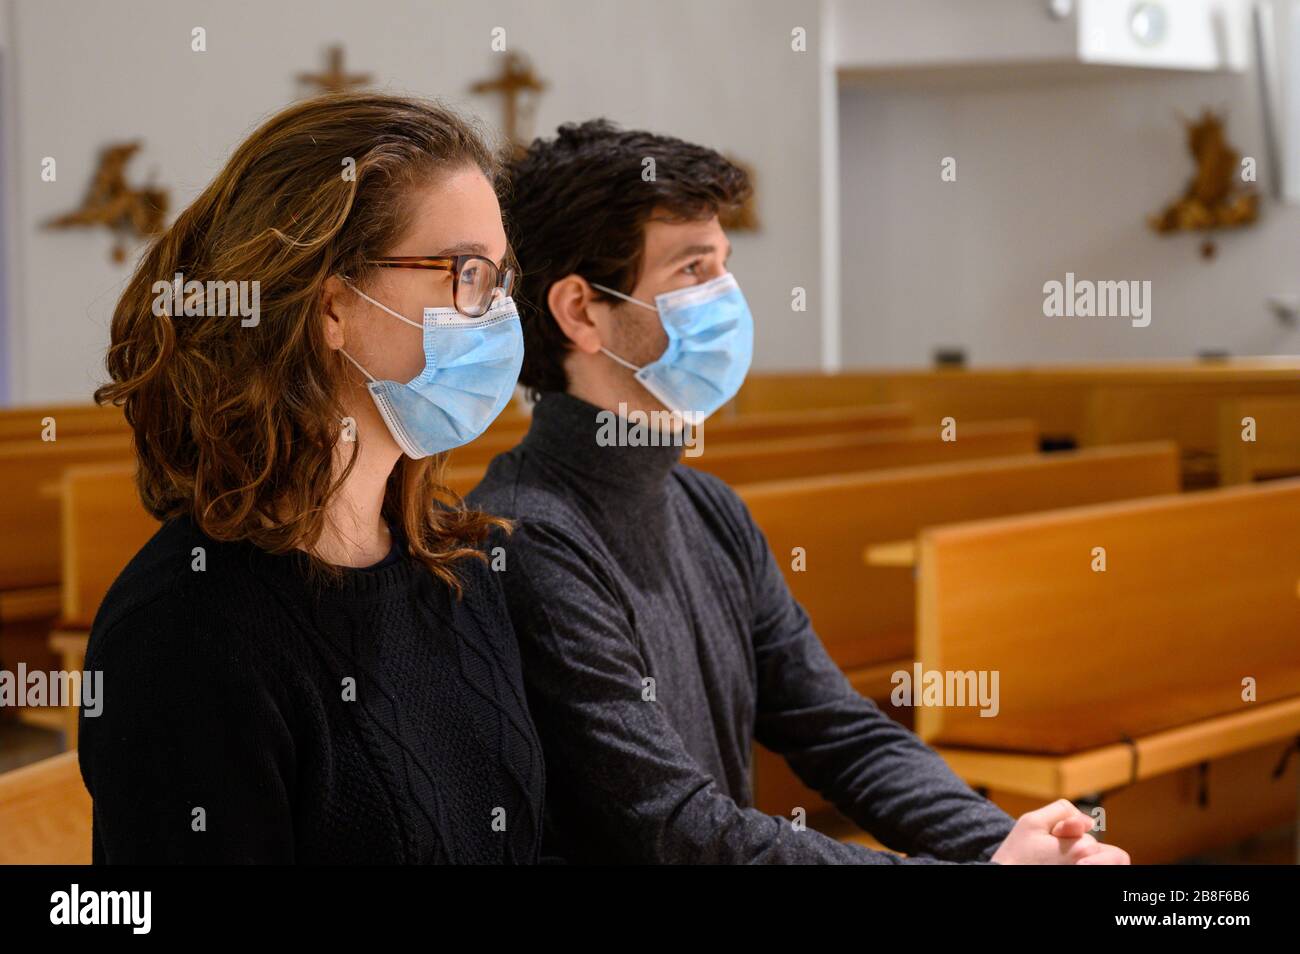 Un jeune couple en masques de visage priant dans une église pendant la pandémie COVID-19. Bratislava, Slovaquie. Banque D'Images